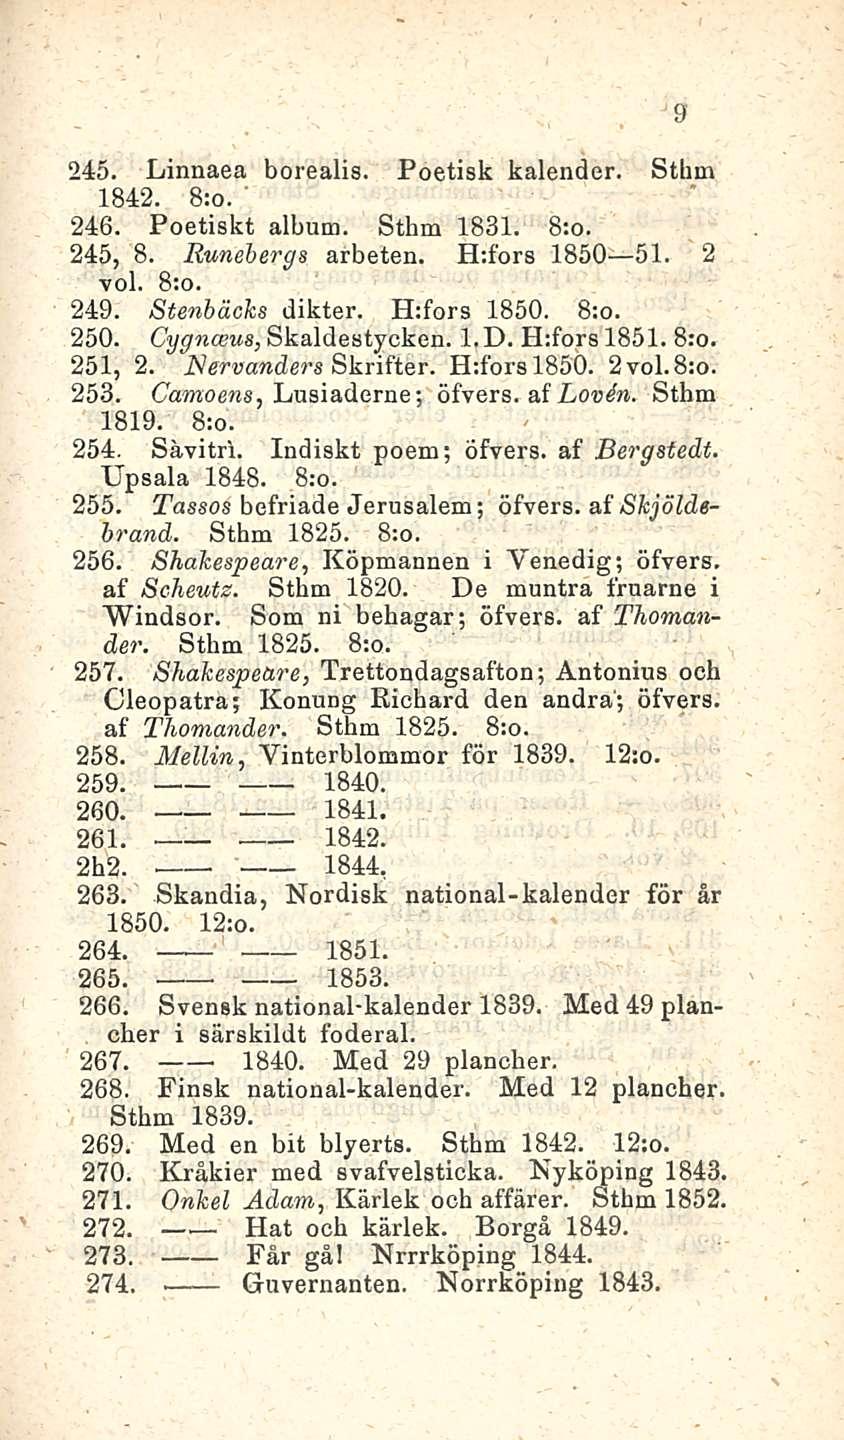 Hat 245. Linnaea borealis. Pöetisk kalender. Sthm 1842. 246. Poetiskt album. Sthm 1831. 245, 8. Runehergs arbeten. H:fors 1850 51. 2 voi. 249. Stenbäcks dikter. H:fors 1850. 250.